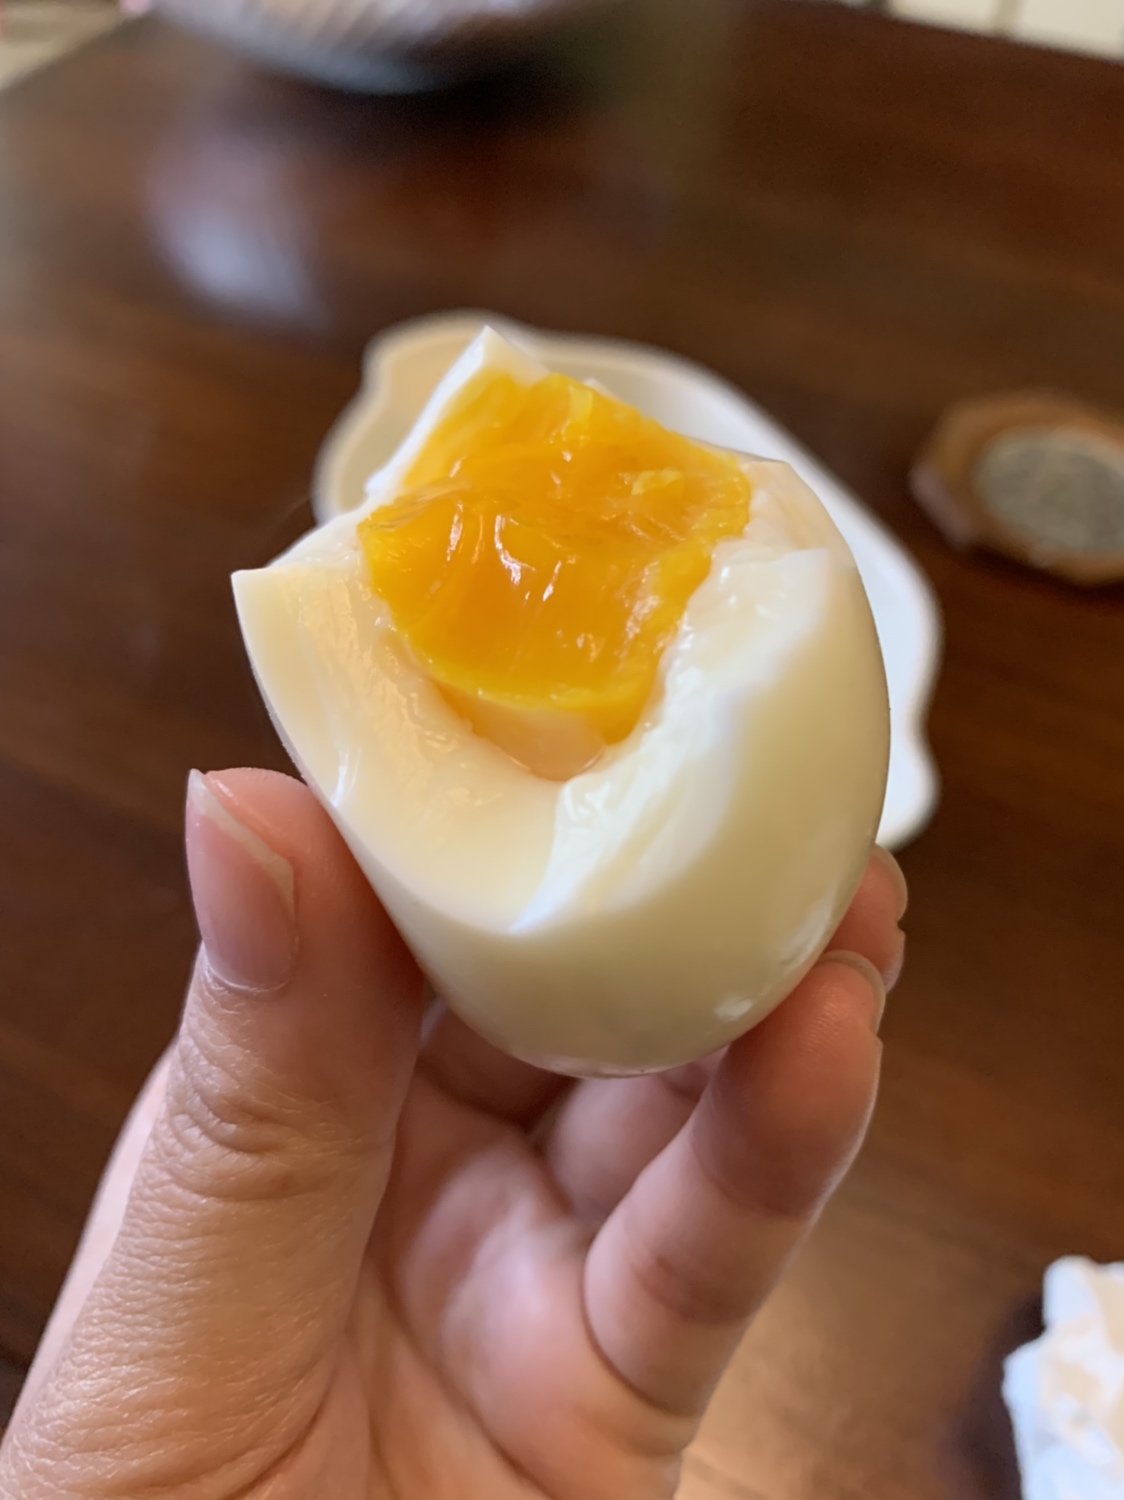 溏心蛋-果冻般的蛋黄